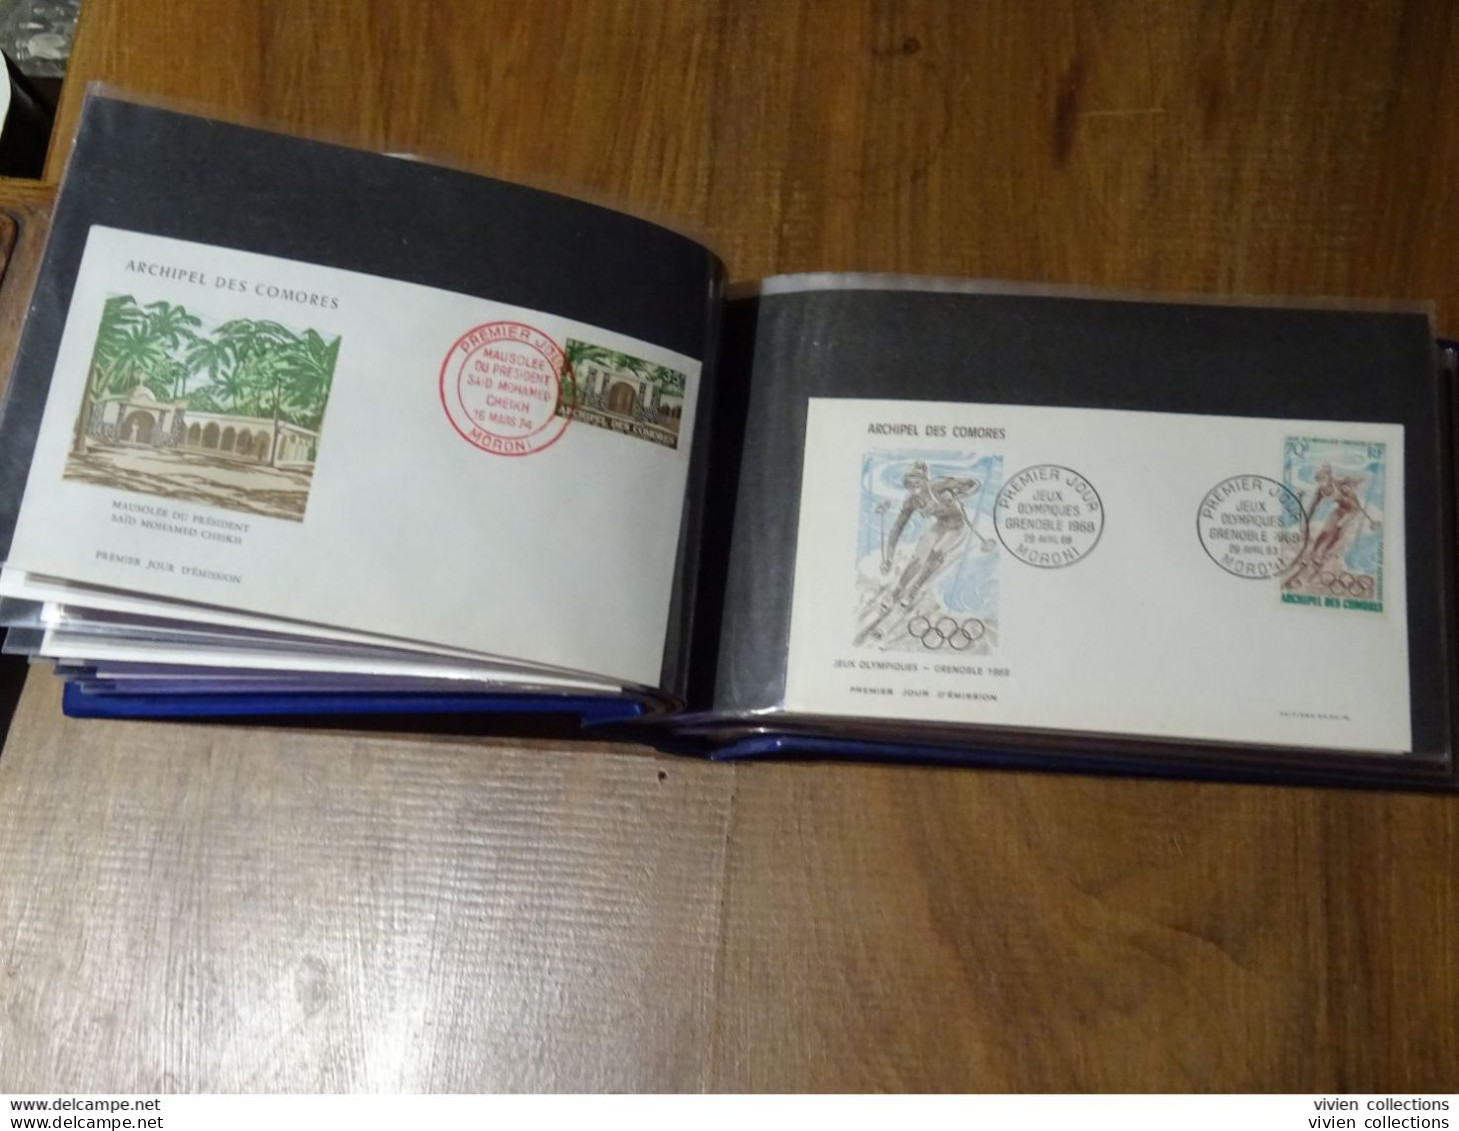 Comores Polynésie Française album lettres principalement 1er jours dont intéressantes et quelques timbres divers en vrac